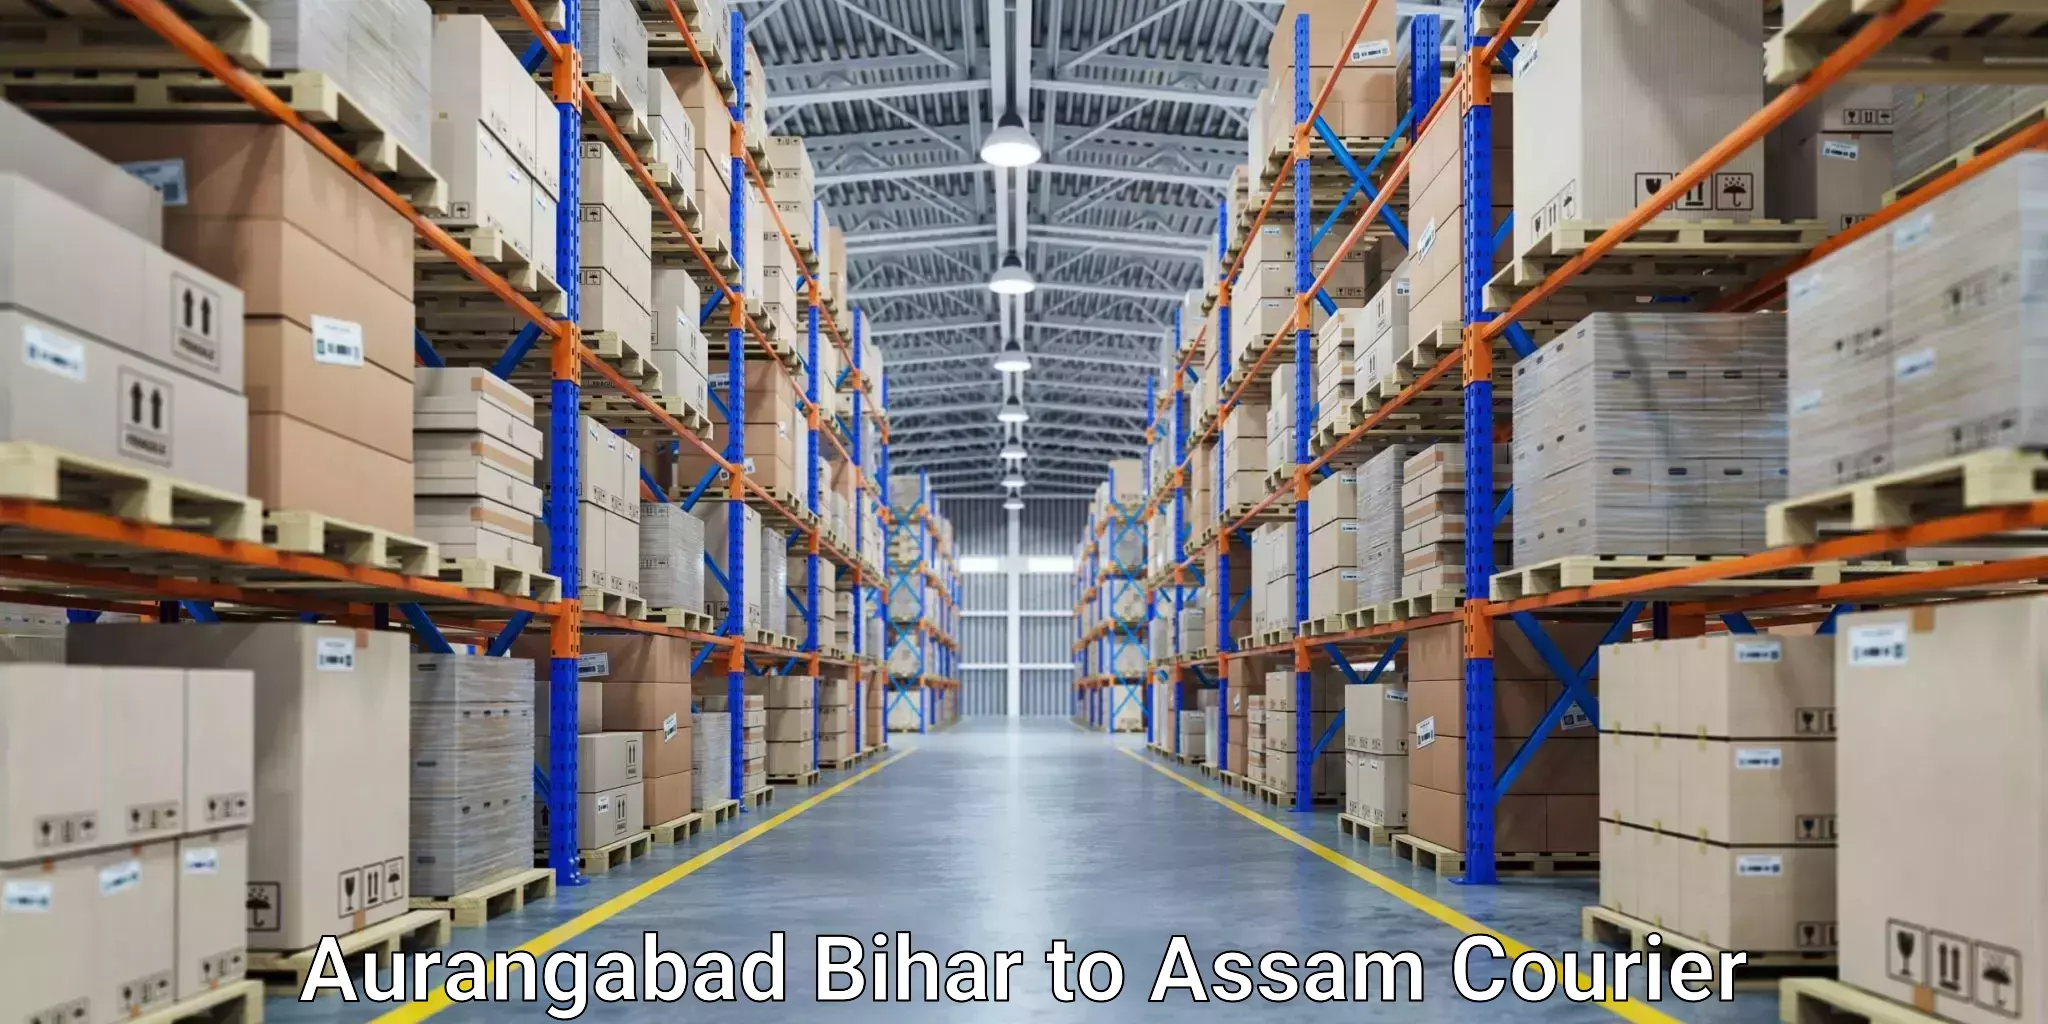 Business logistics support in Aurangabad Bihar to Assam